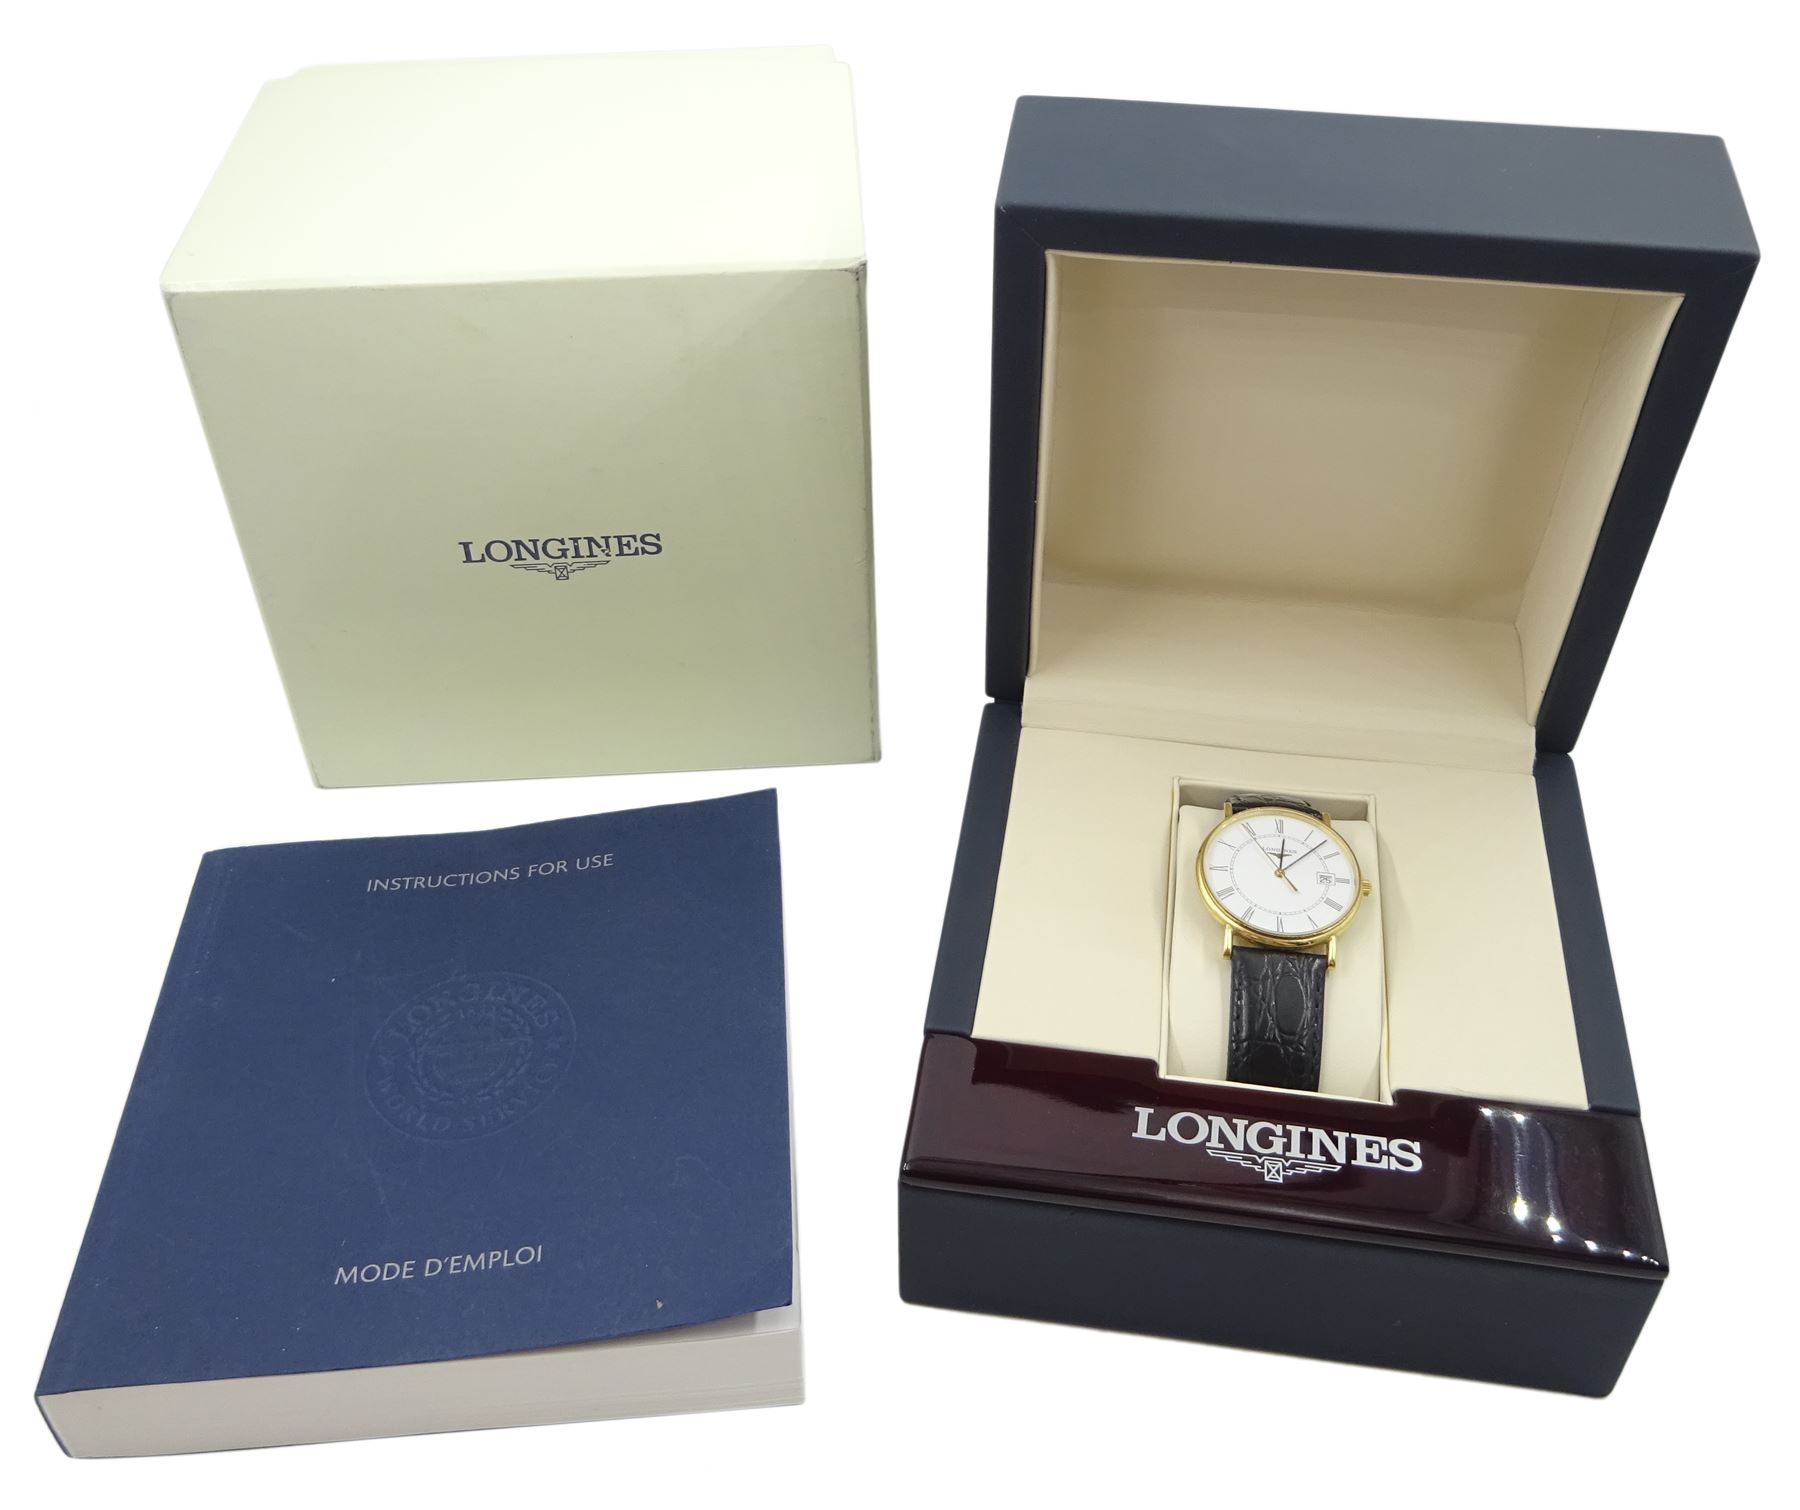 Longines Présence gentleman's 18ct gold quartz wristwatch - Image 2 of 3